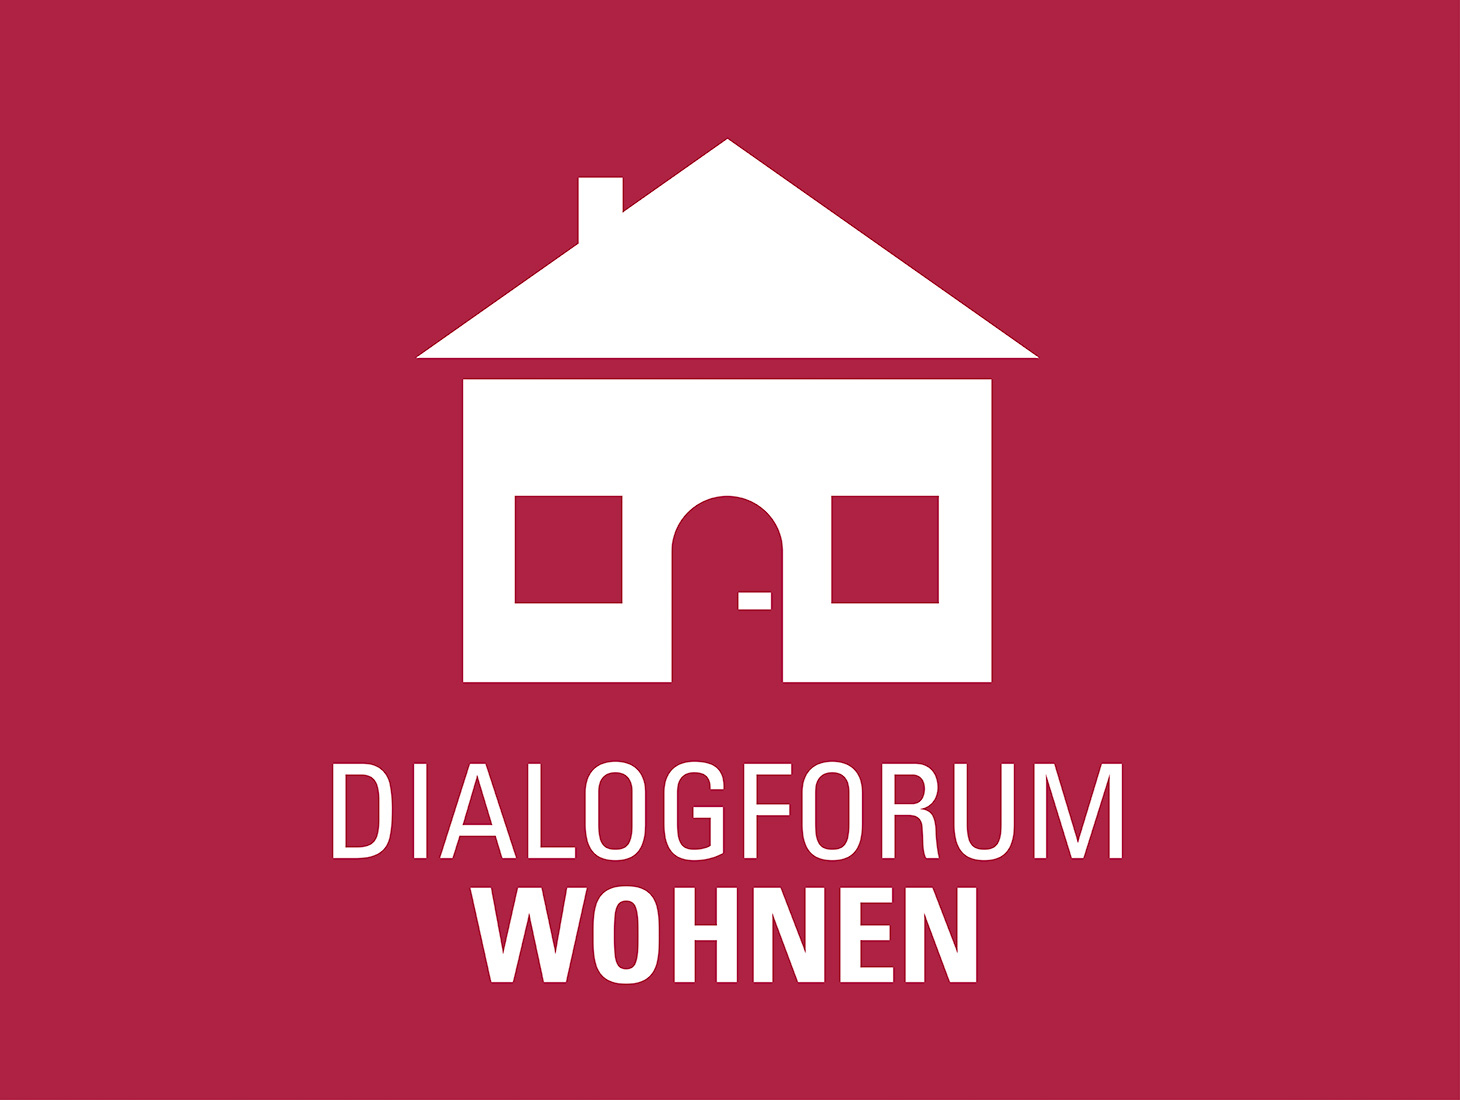 Piktogramm des Dialogforum "Wohnen", ein stilisiertes Einfamilienhaus.